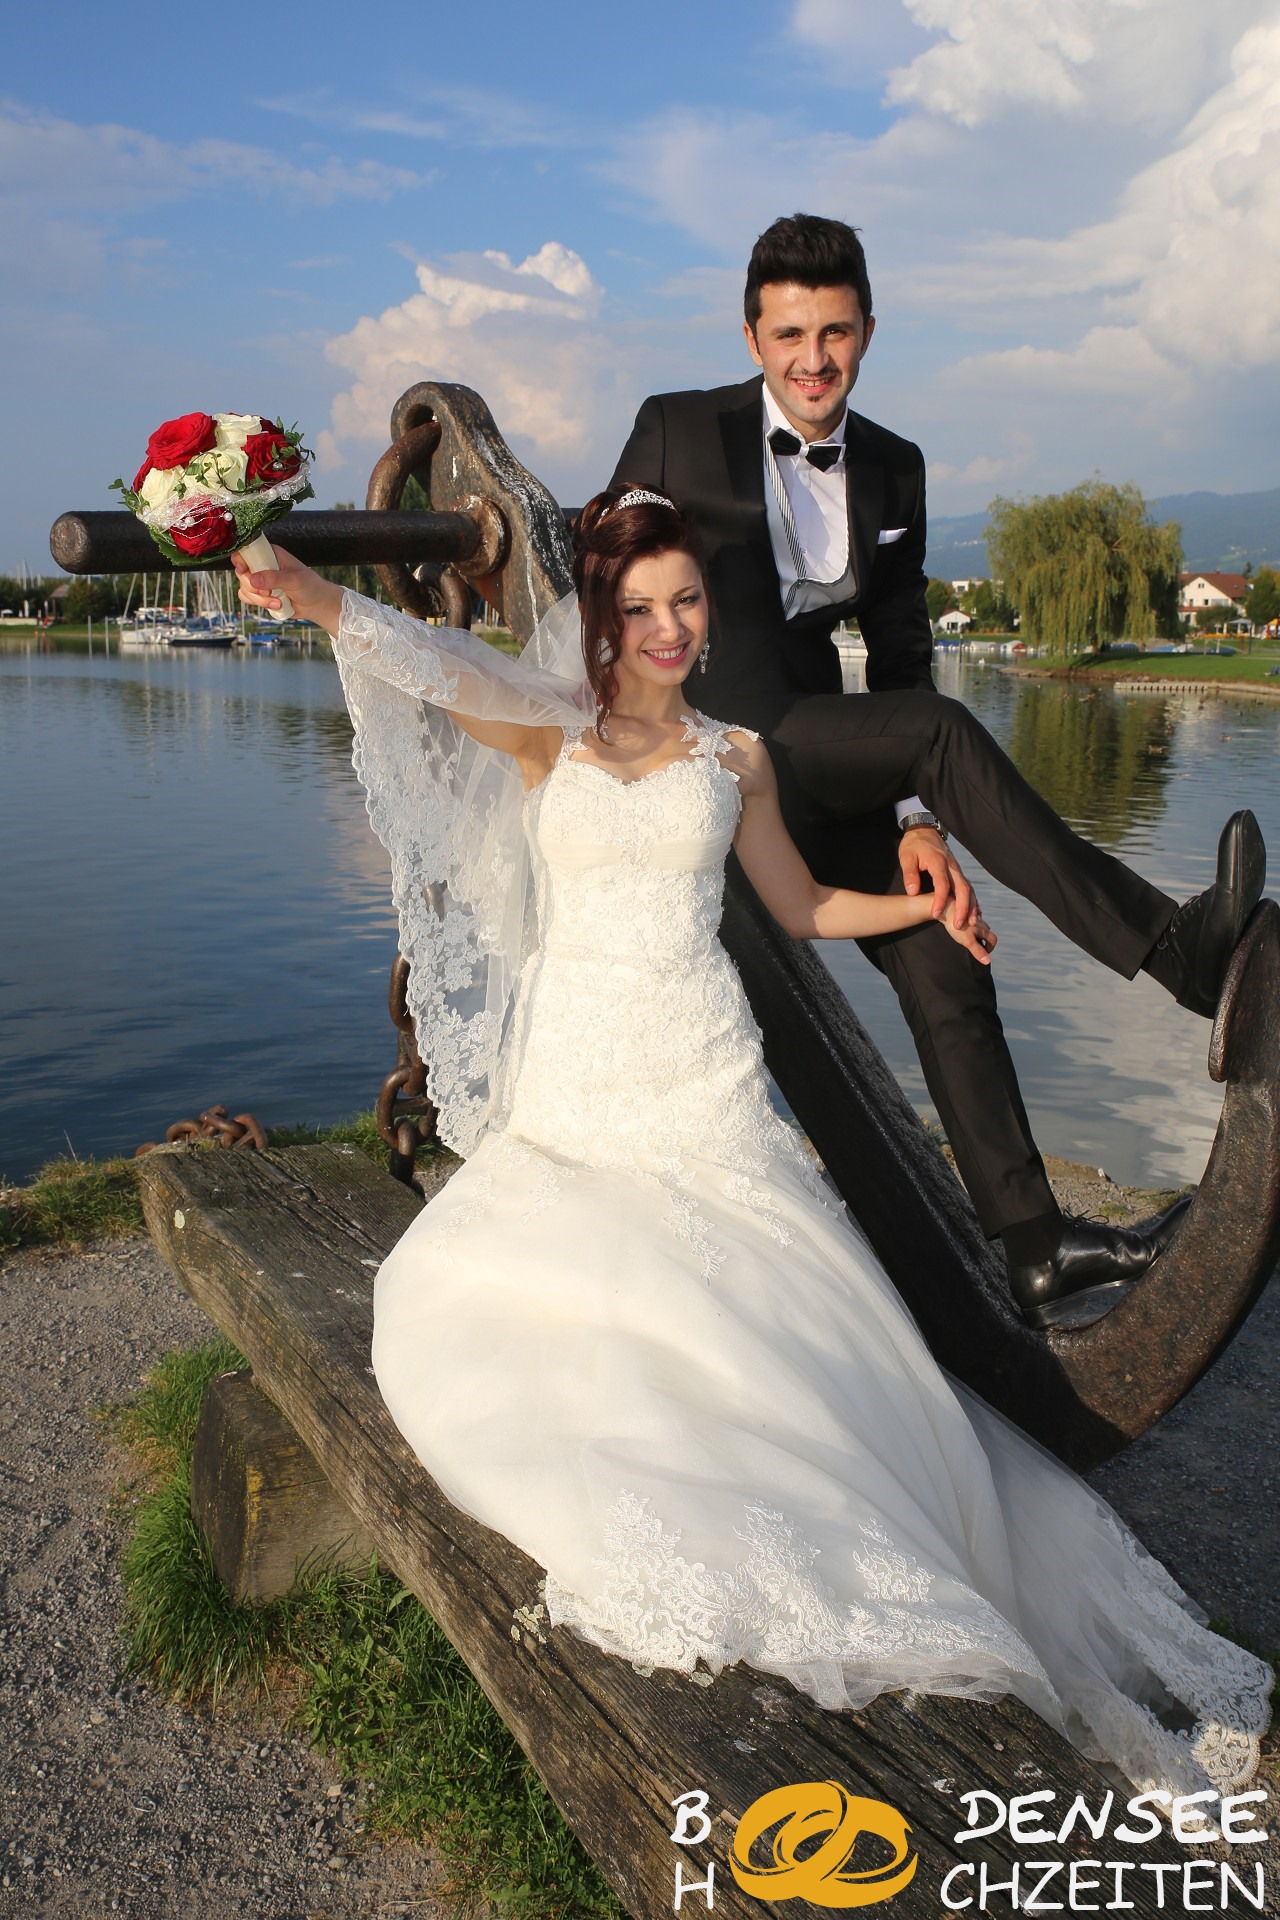 2014 09 06 Hochzeit Hohenems Sercan Muazzez BODENSEE HOCHZEITEN COM IMG 8567